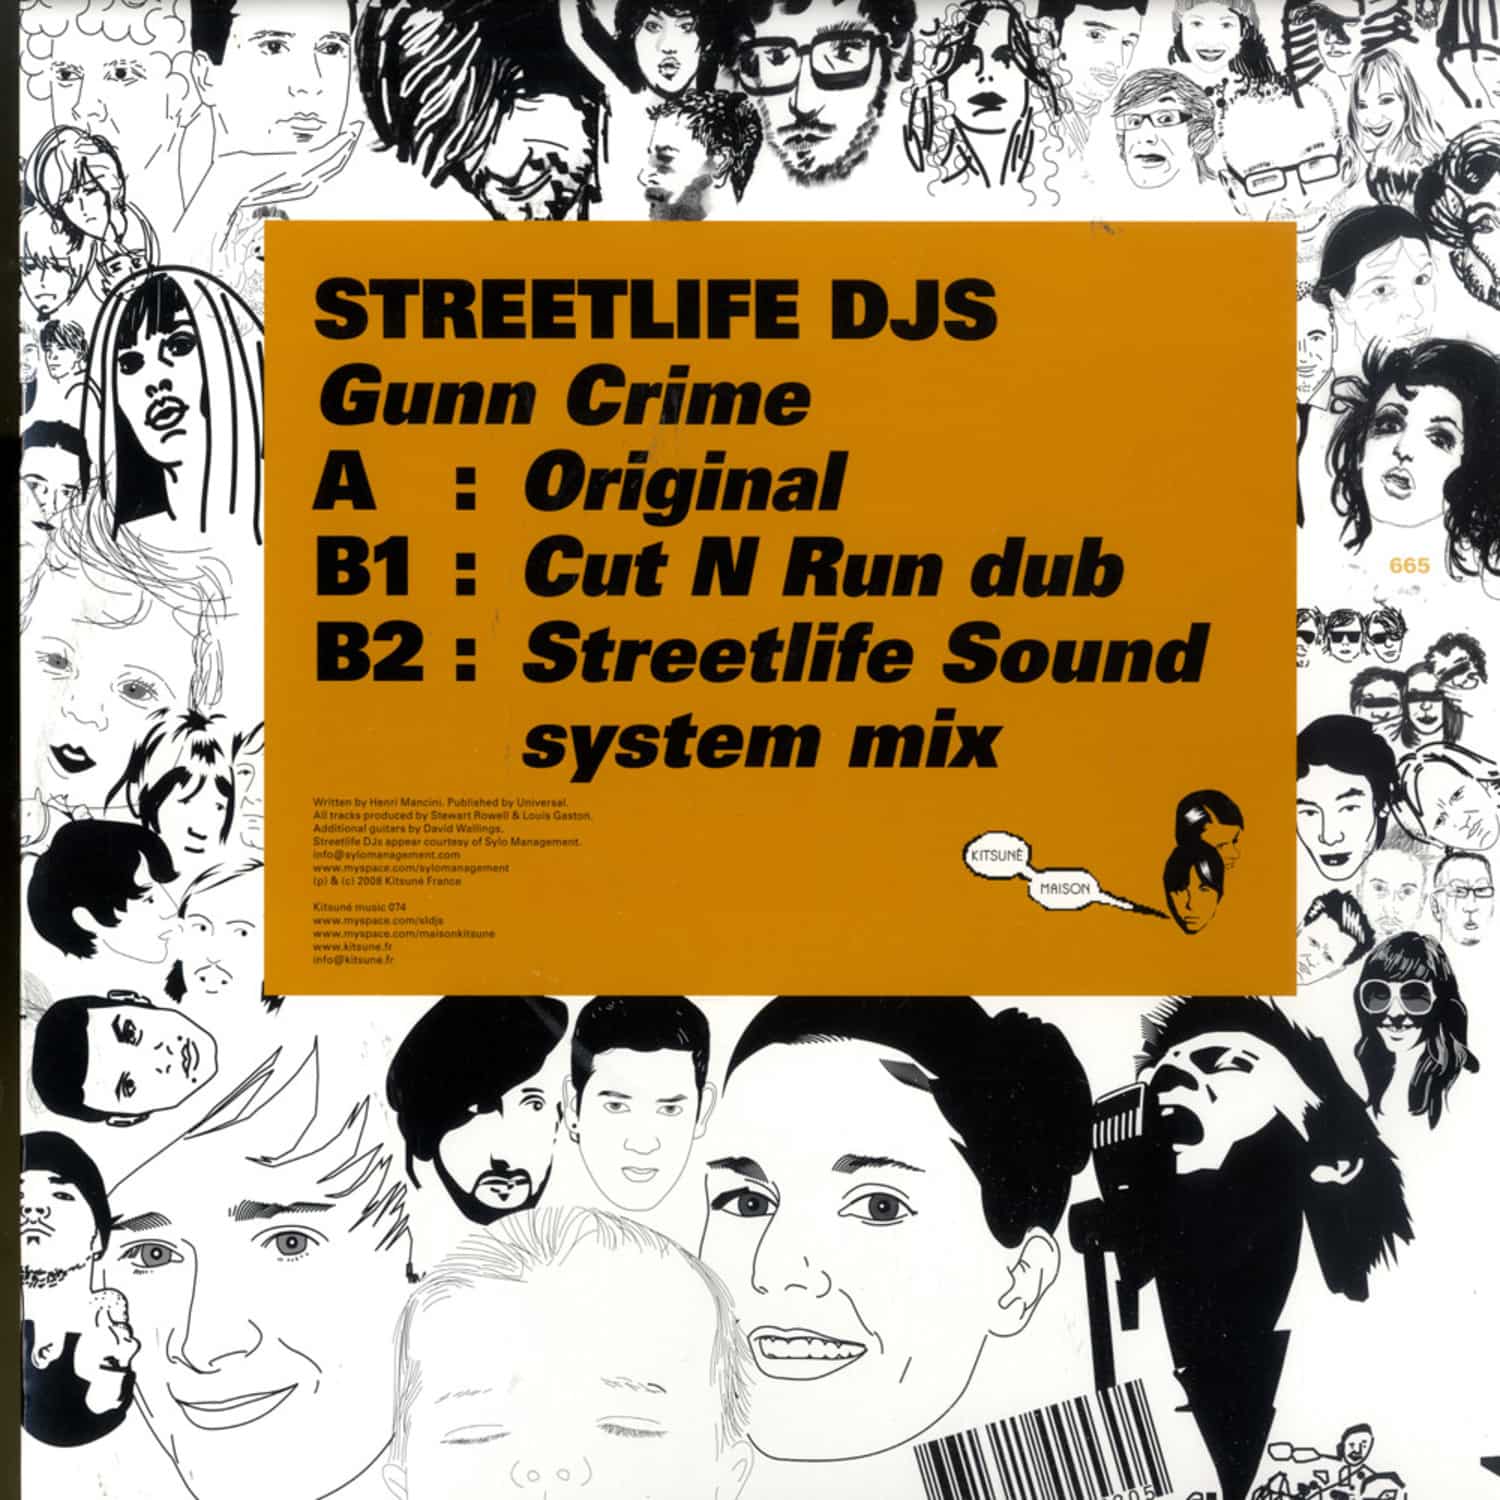 Streetlife DJs - GUNN CRIME